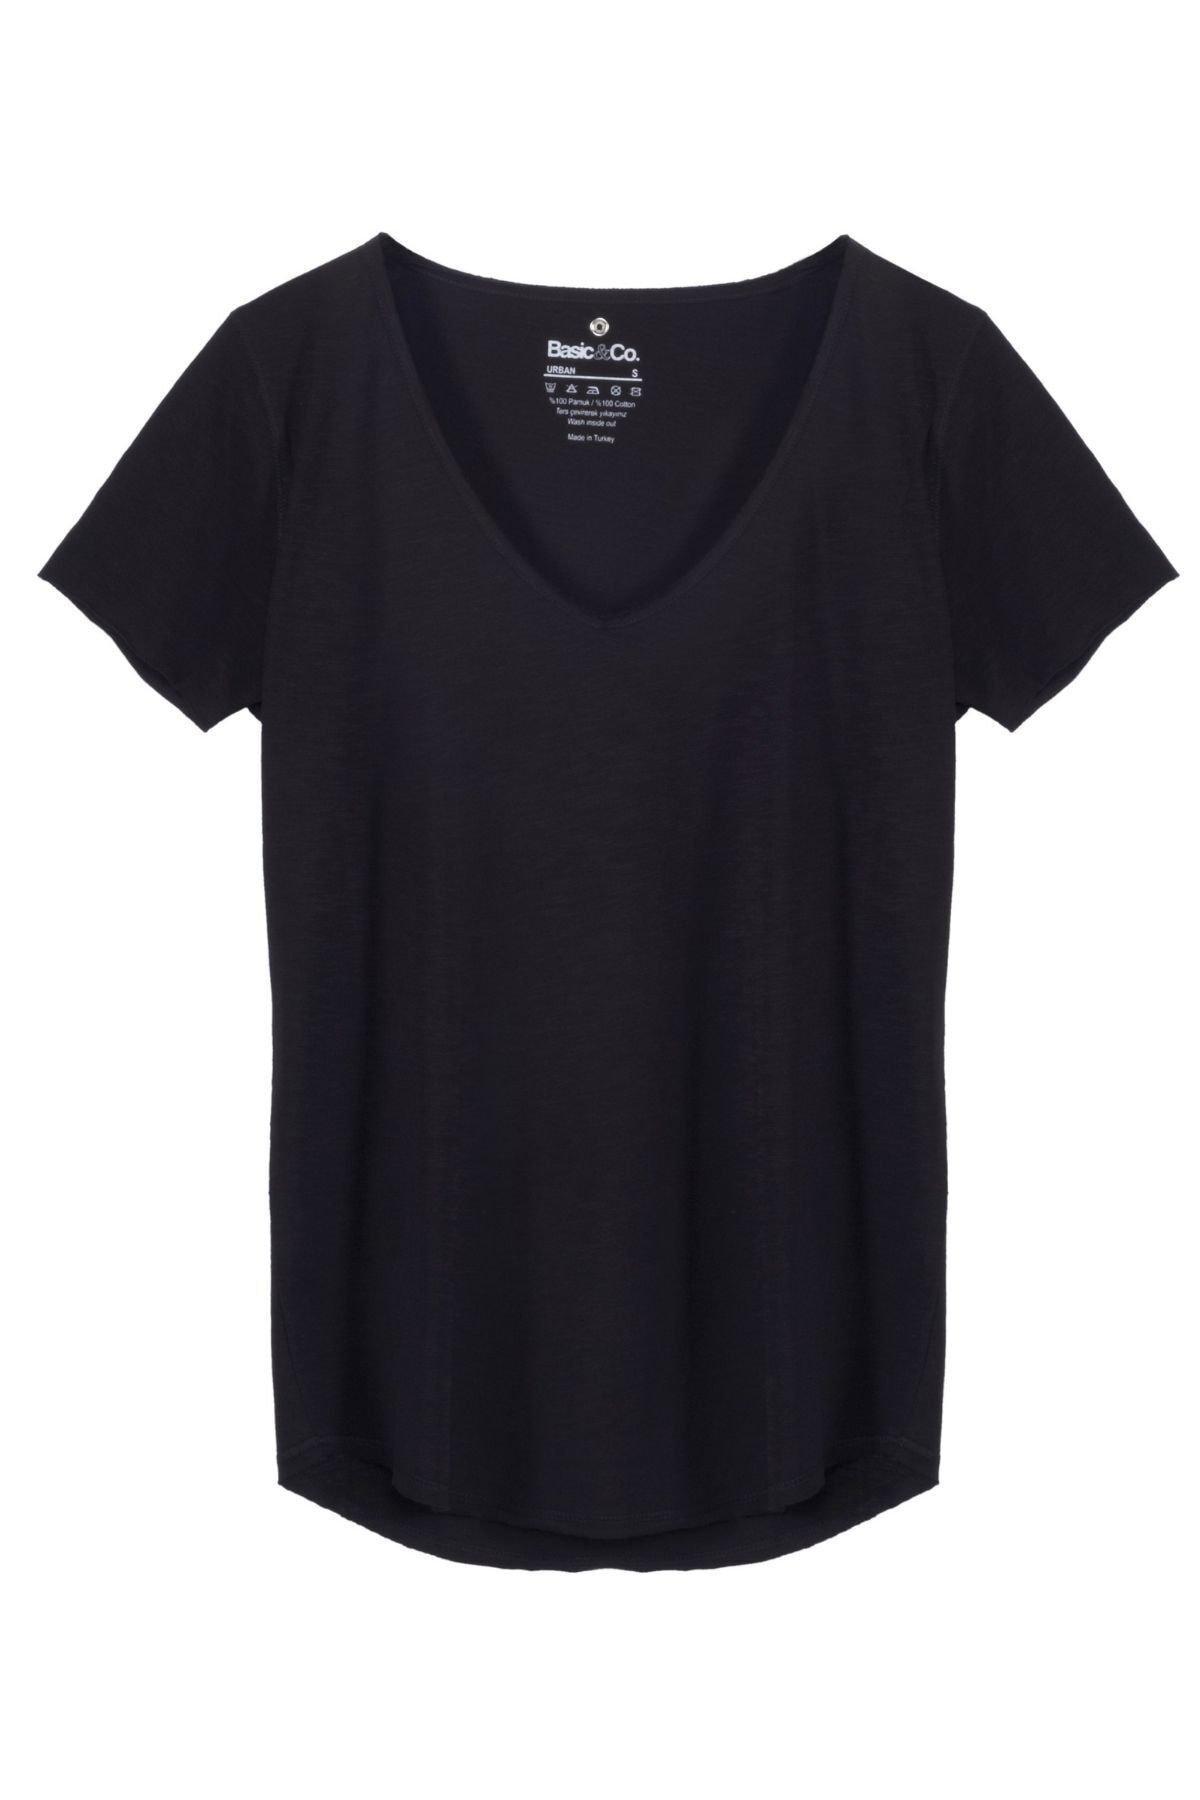 Basic Co Kadın Siyah T-Shirt URB001